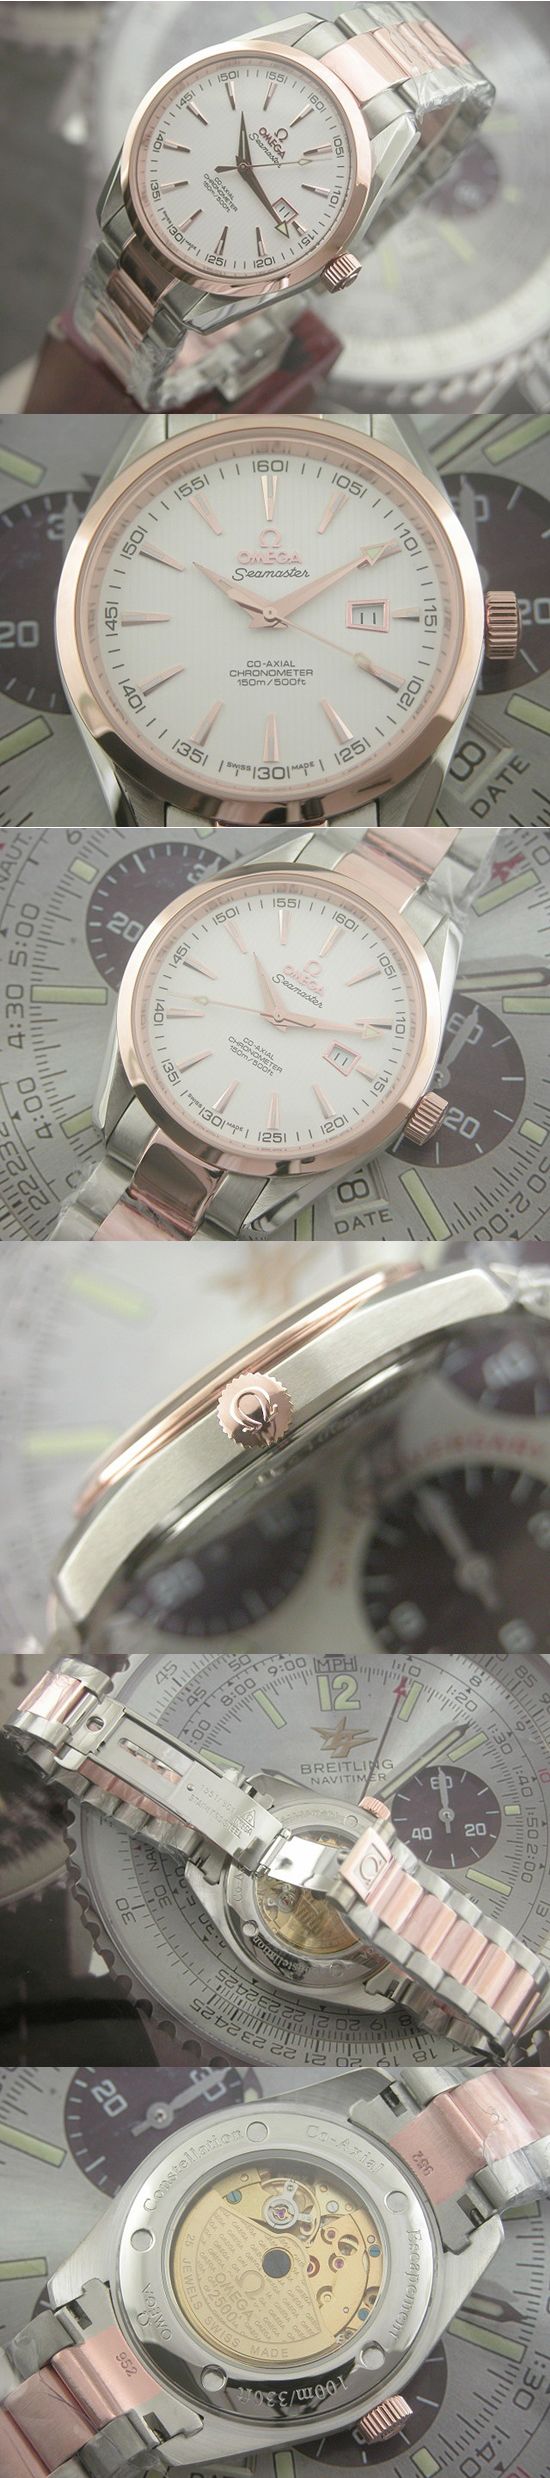 おしゃれなブランド時計がオメガ-シーマスターOMEGA-2373.70-aw-男性用を提供します.